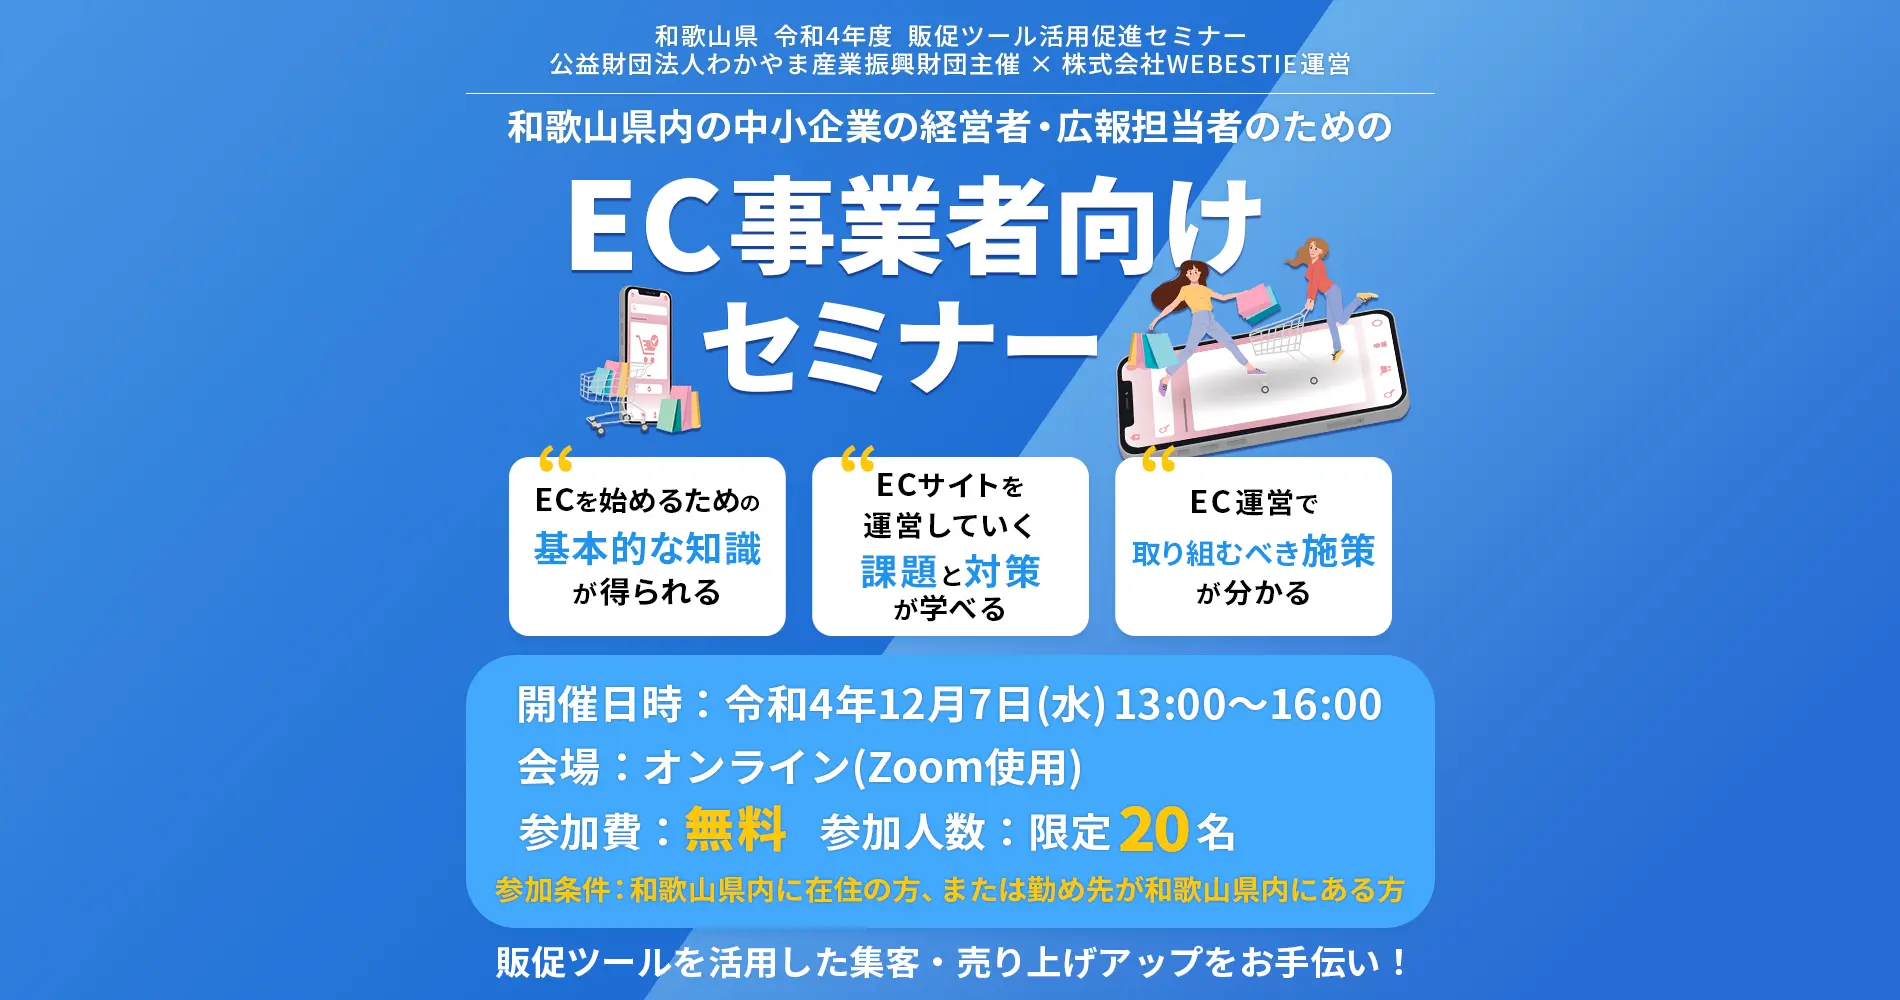 和歌山県内の中小企業の経営者、広報担当者のための、
EC事業者向けセミナー